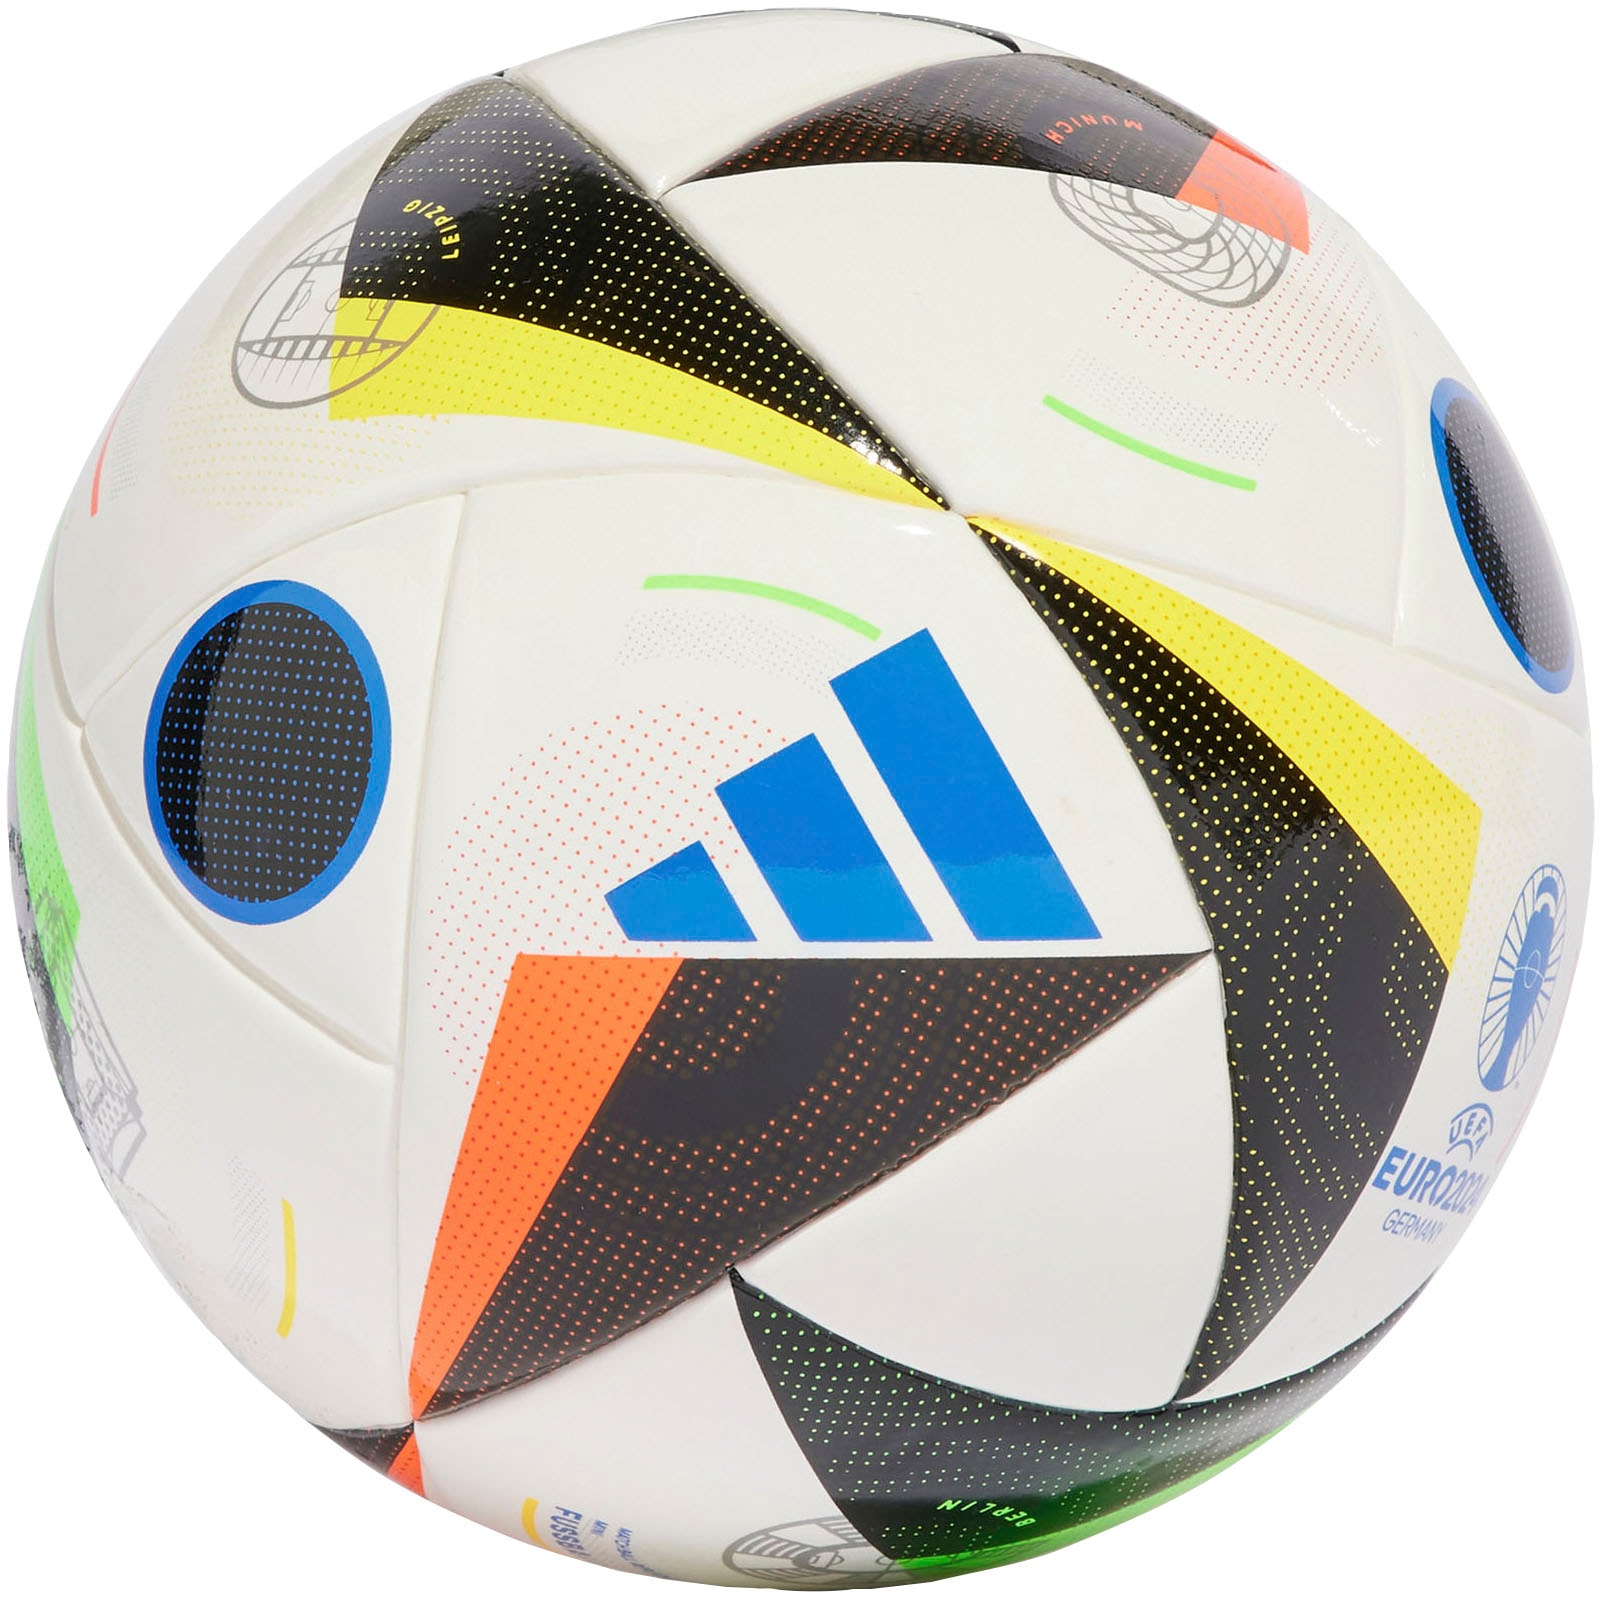 adidas Performance Fussball »EURO24 MINI«, (1), Europameisterschaft 2024